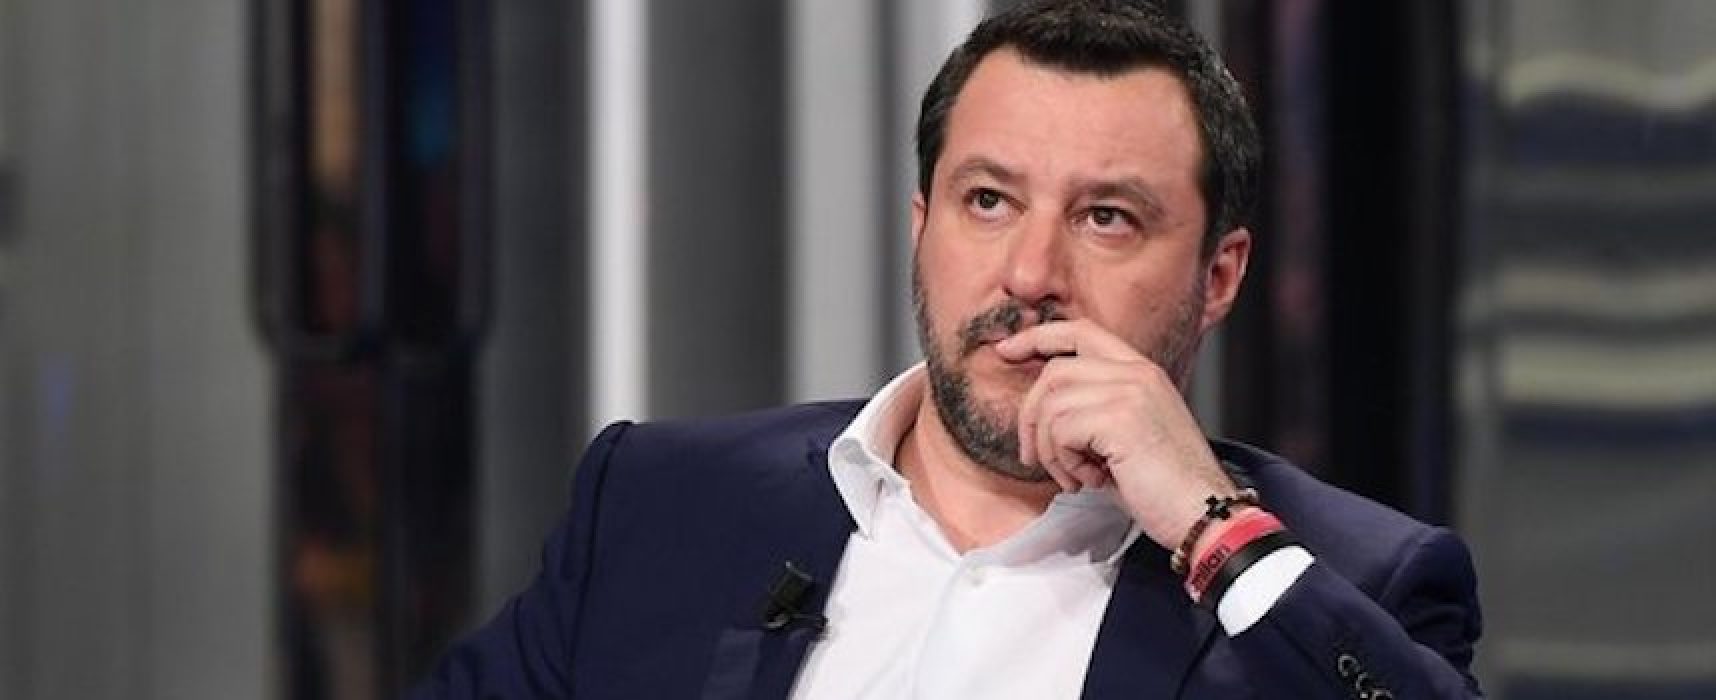 Matteo Salvini si congratula con i ragazzi della “Monterisi” per lettera contro Junior Cally